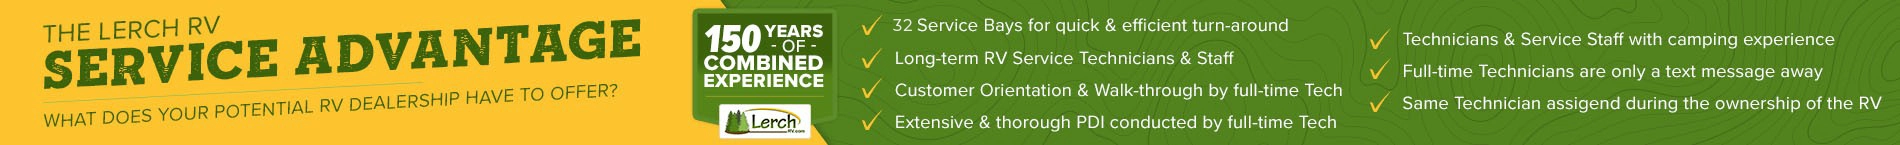 The Lerch RV Service Advantage